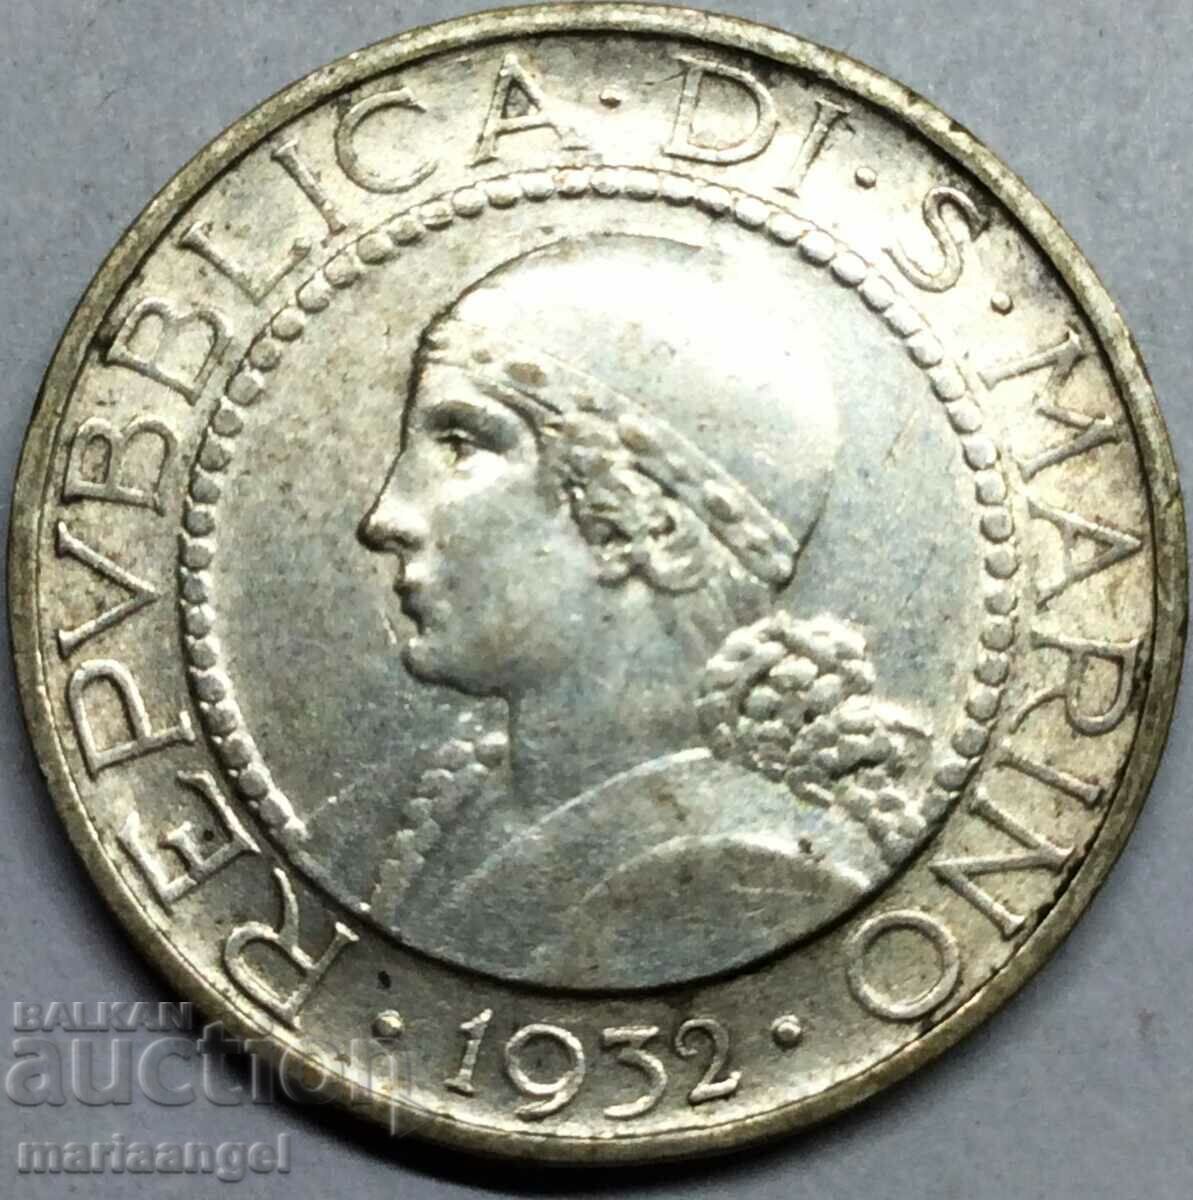 5 λίρες 1932 San Marino Silver - αρκετά σπάνιο